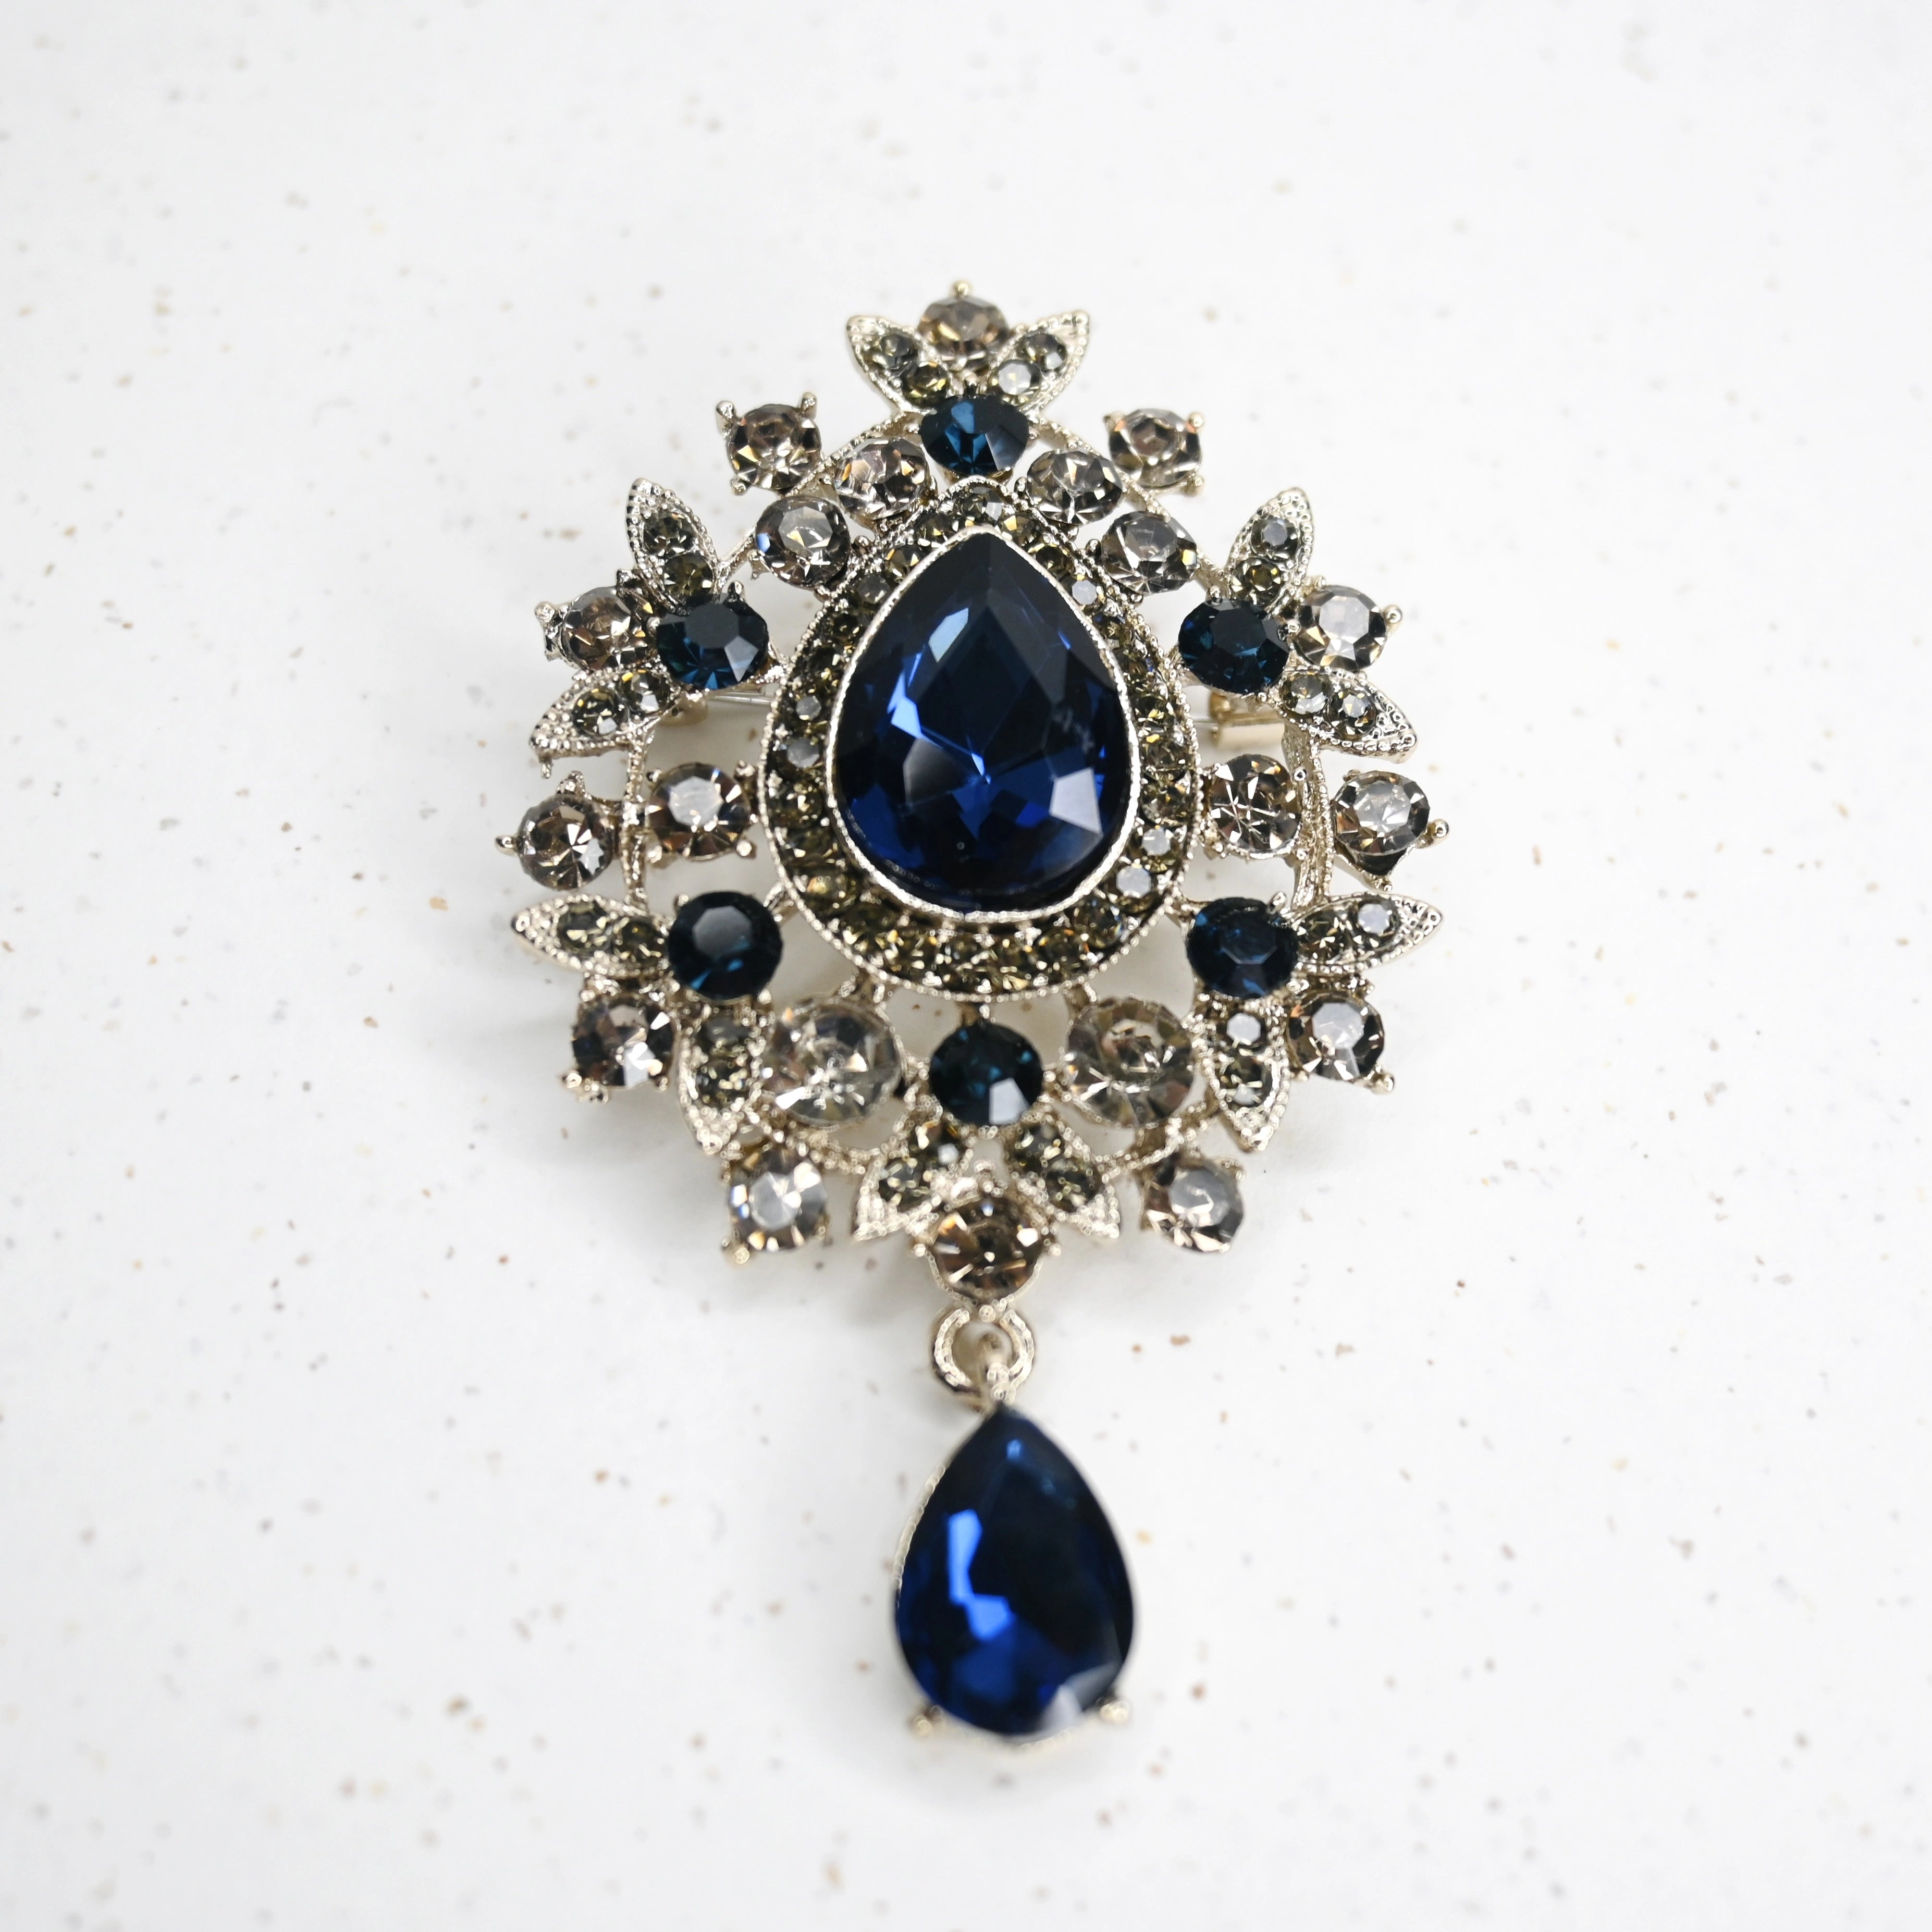 Regency Treasure Brooch in Royal Blue and Vintage Silver